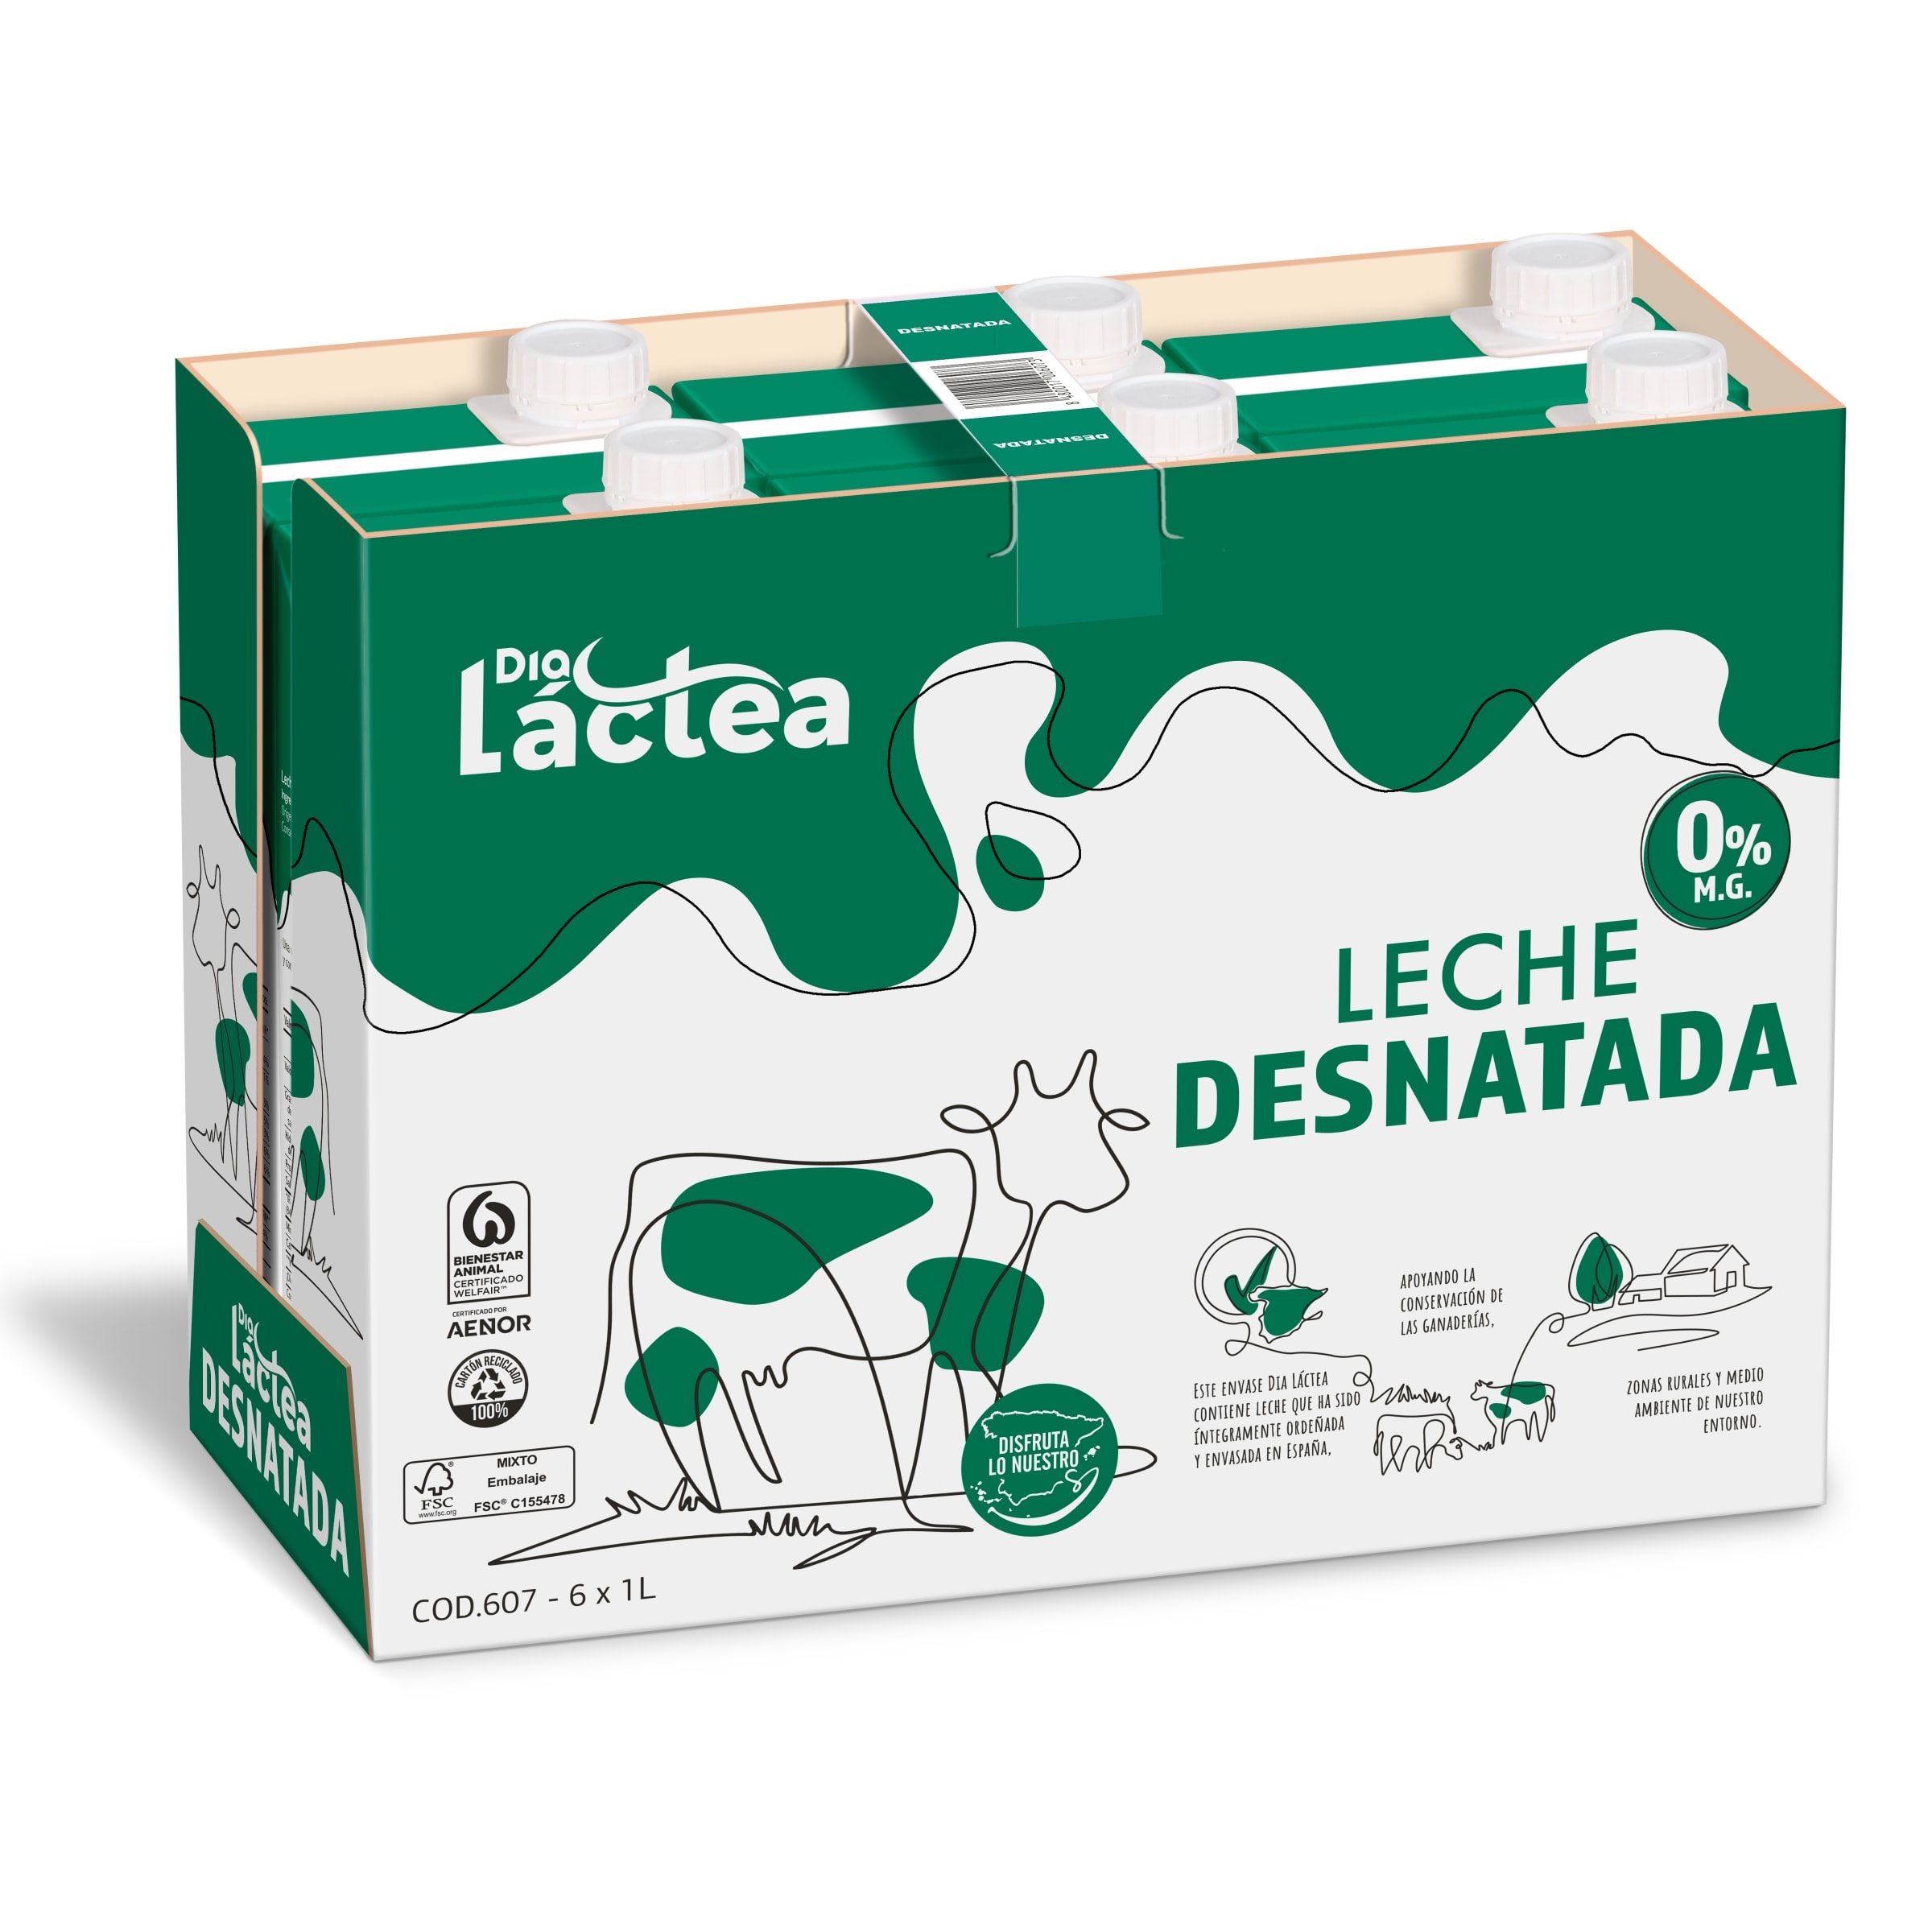 Leche semidesnatada sin lactosa Dia Láctea brik 1 l - Supermercados DIA